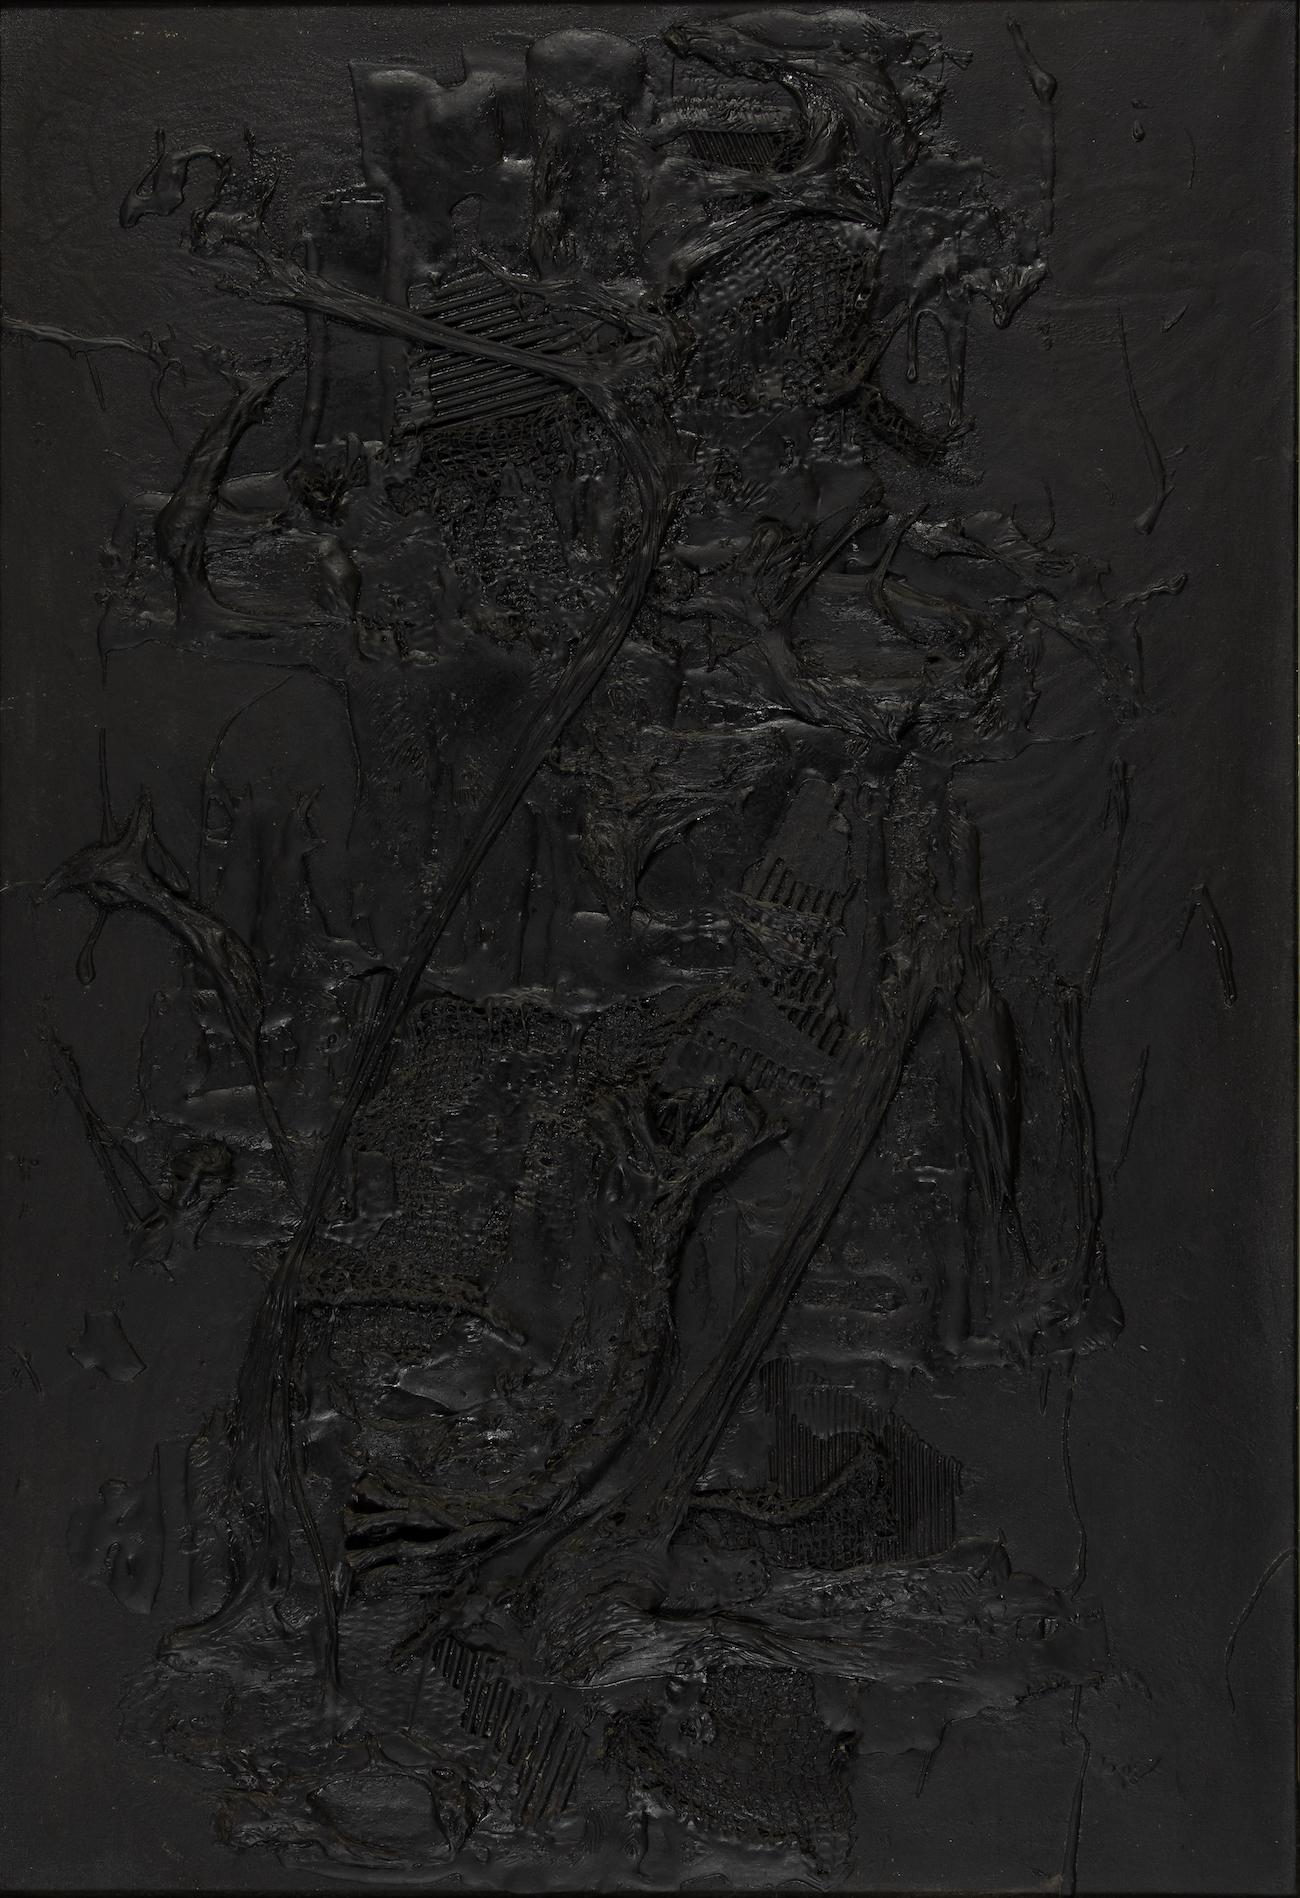 Composition d'Aika Brown (1937-1964)
Technique mixte sur toile
130 x 89cm (51 ¹/₈ x 35 pouces)
Signé et daté au verso, B. AIKA Paris 1961
Exécuté en 1961
